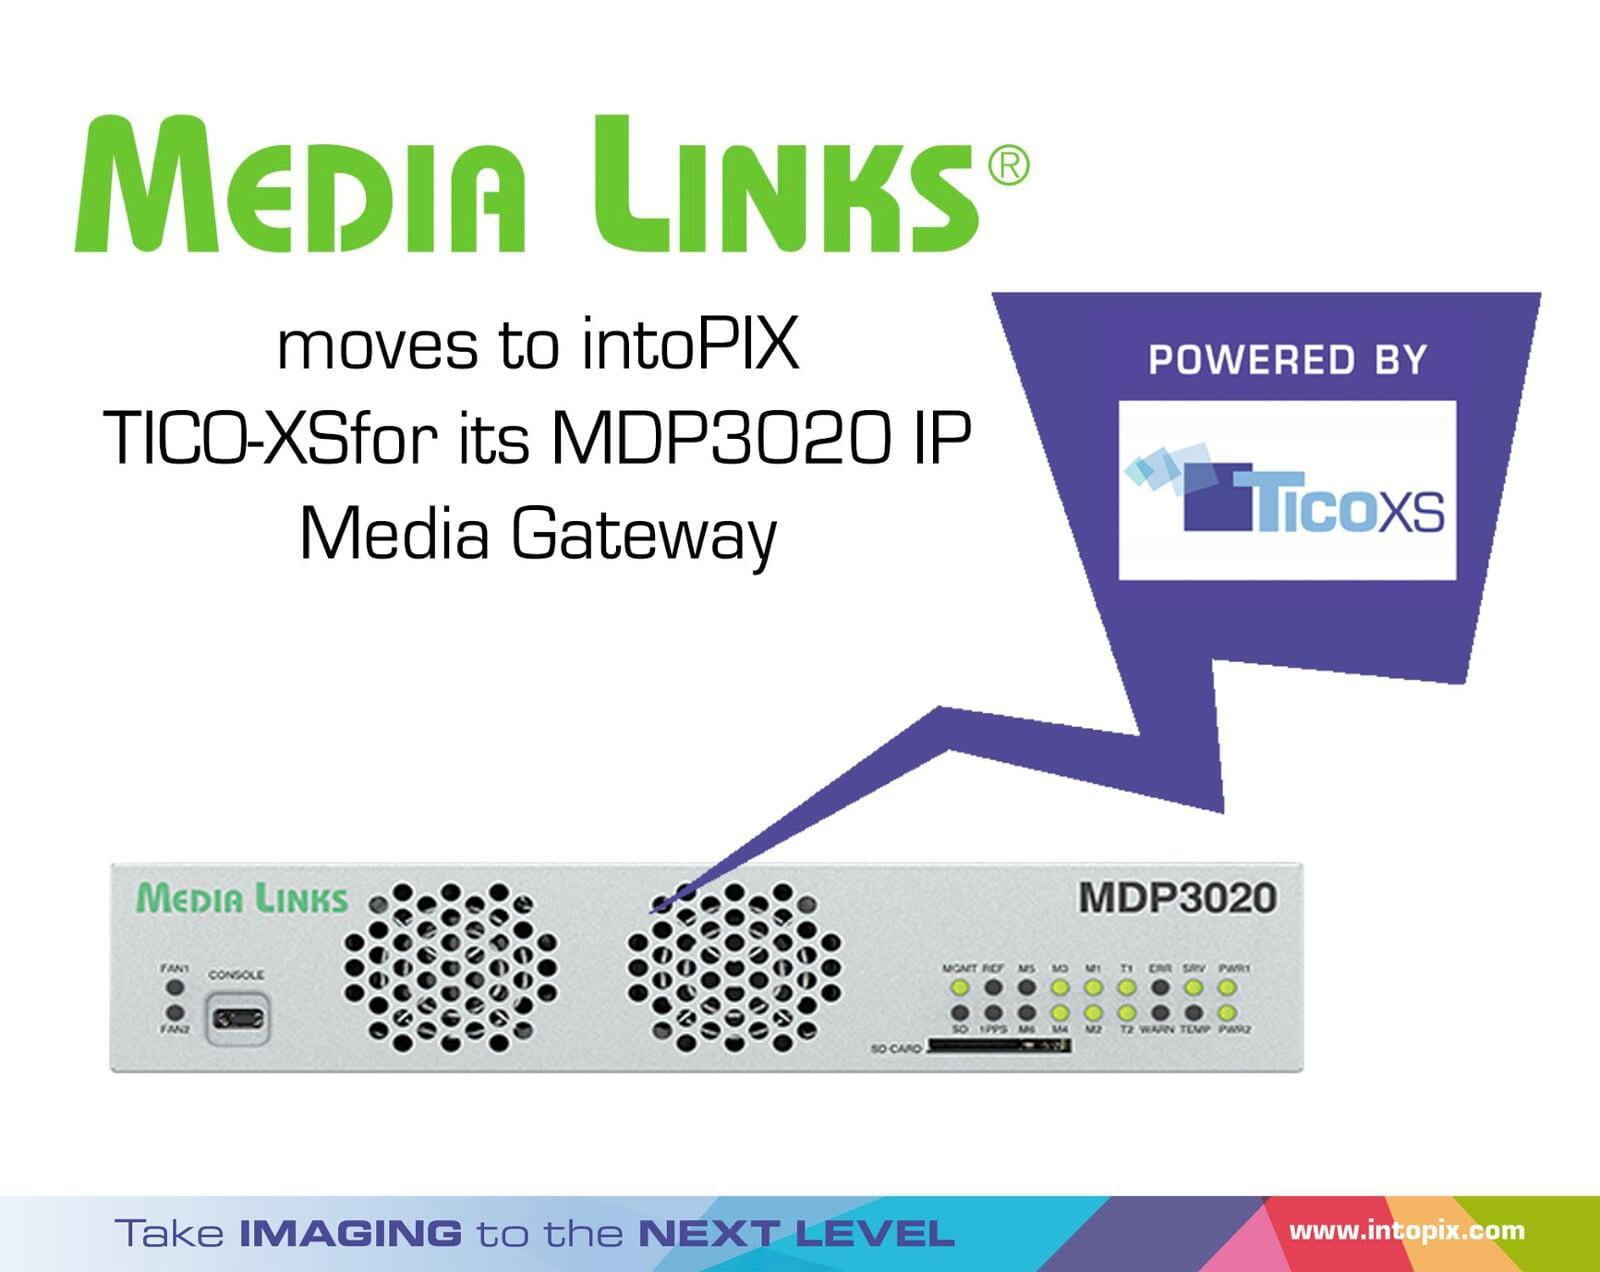 媒體連結移至 intoPIX TICO-XS用於其MDP3020 IP 媒體閘道